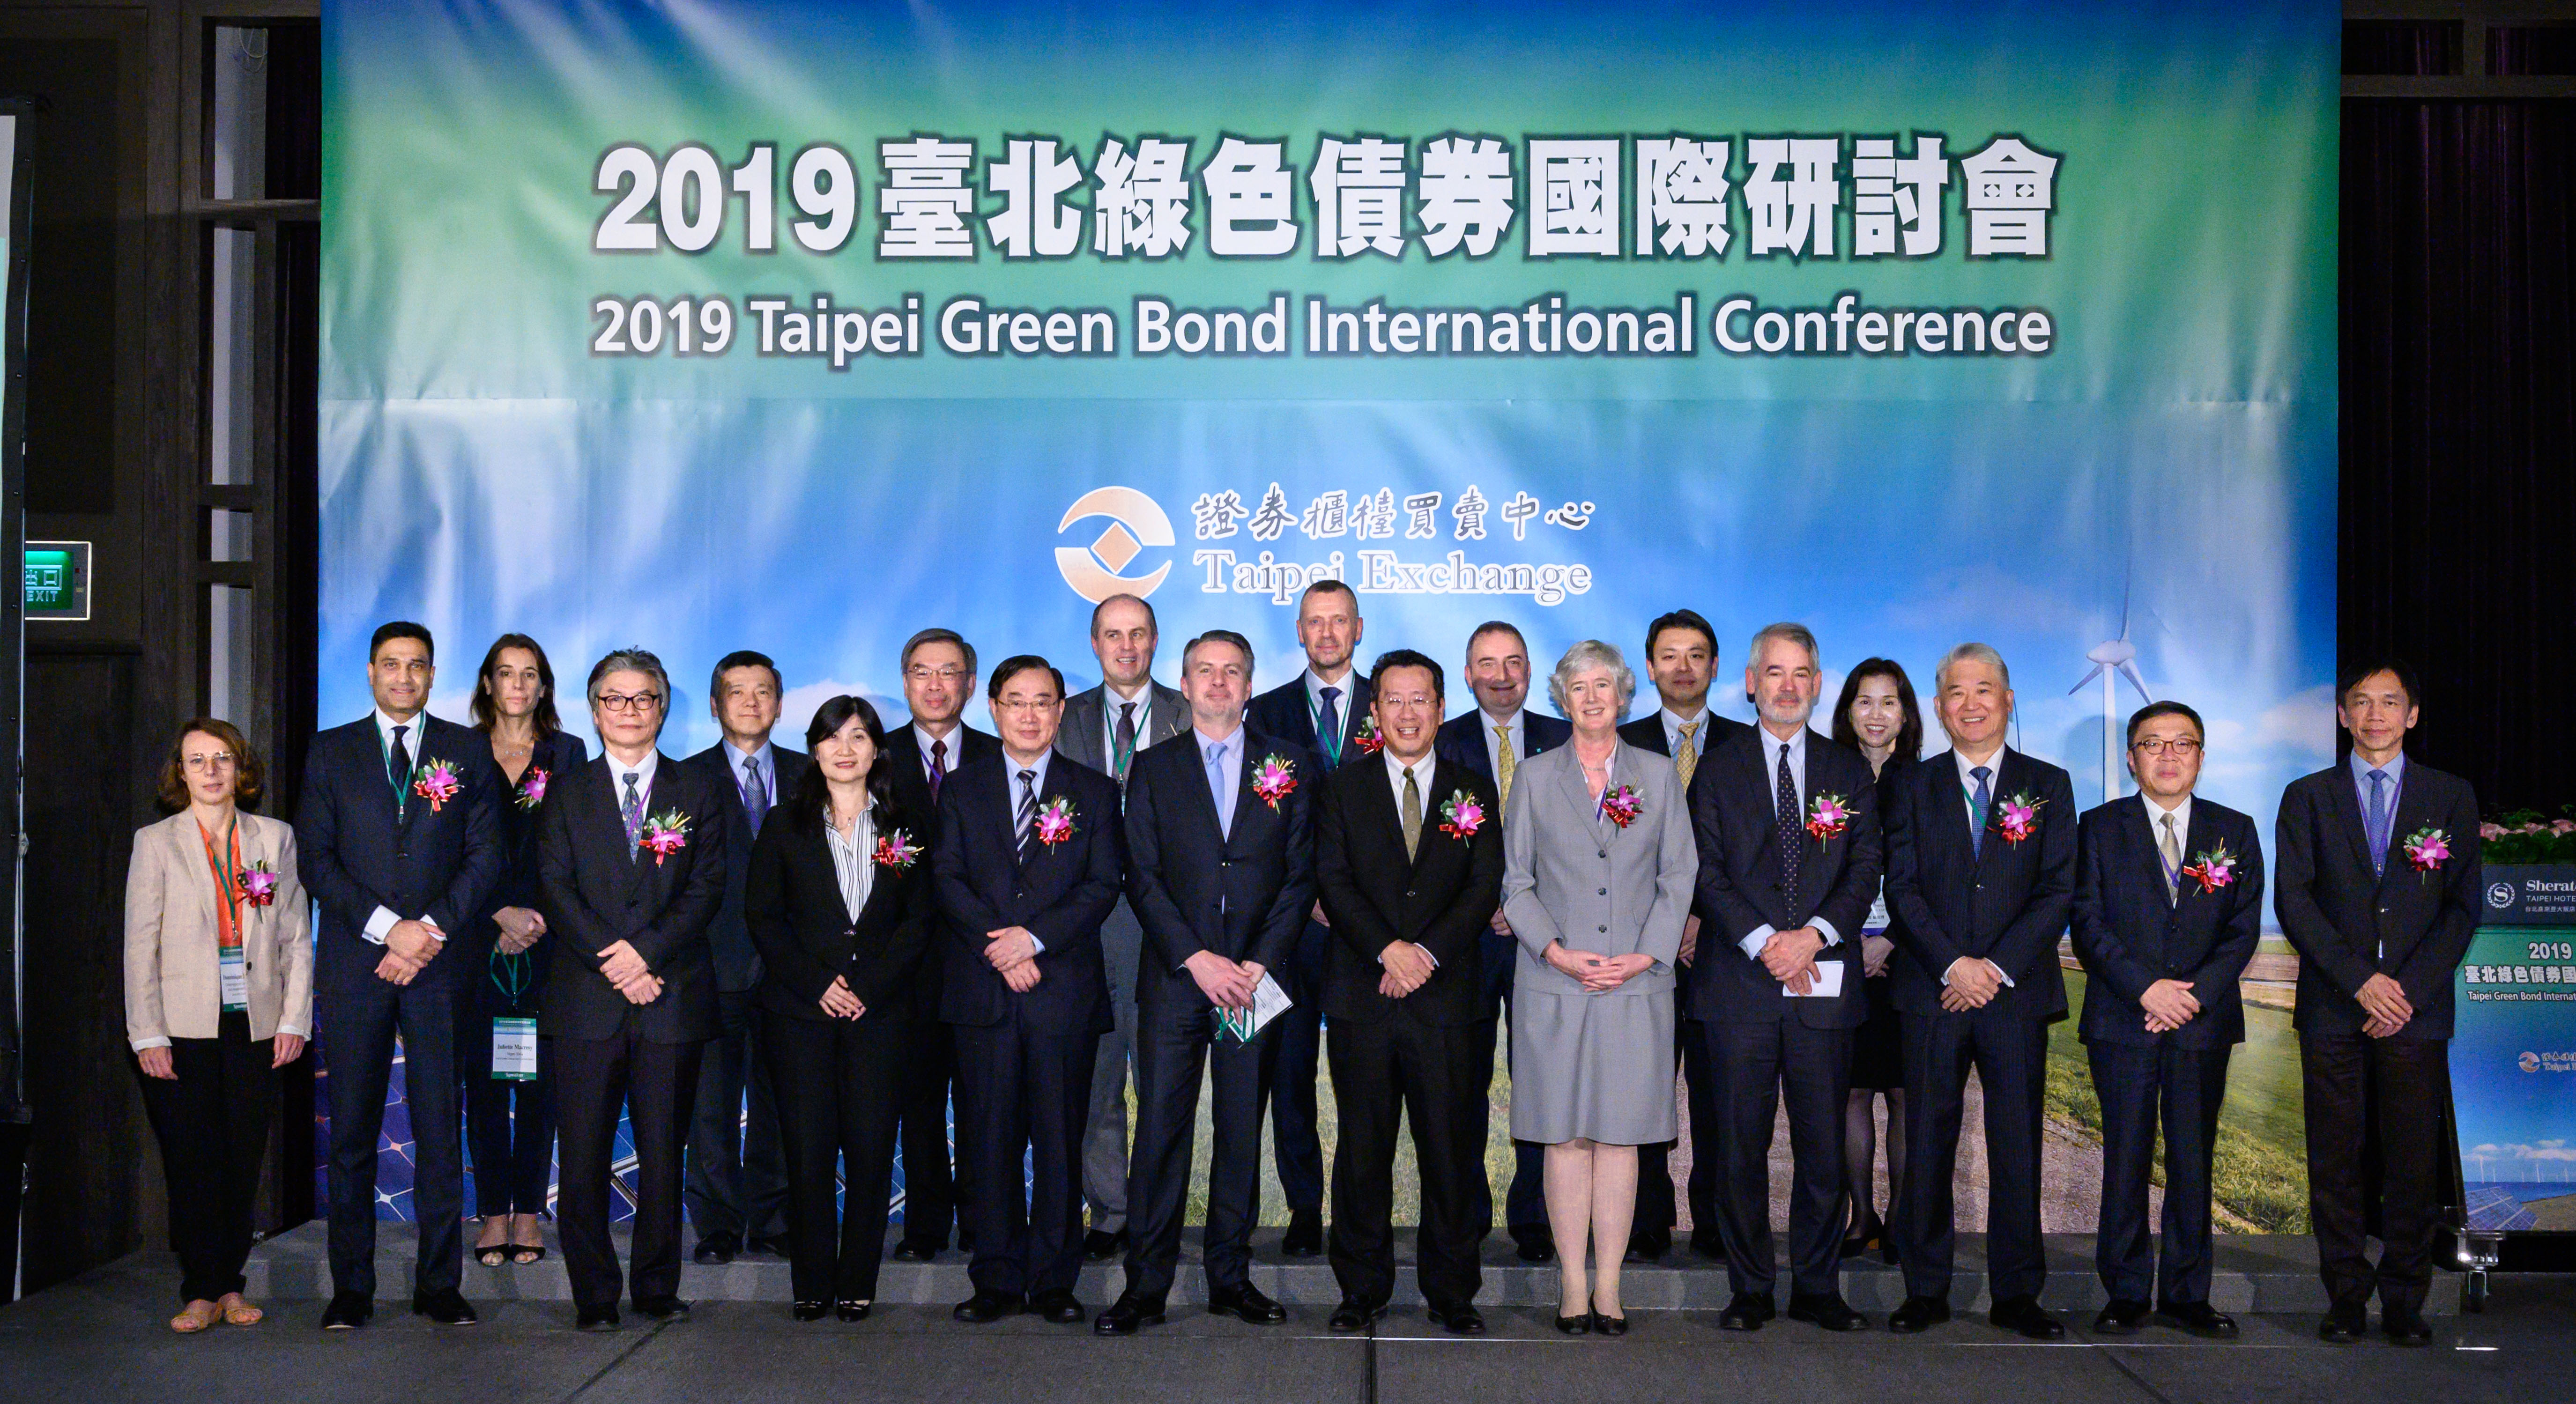 2019年11月6日「2019臺北綠色債券國際研討會」